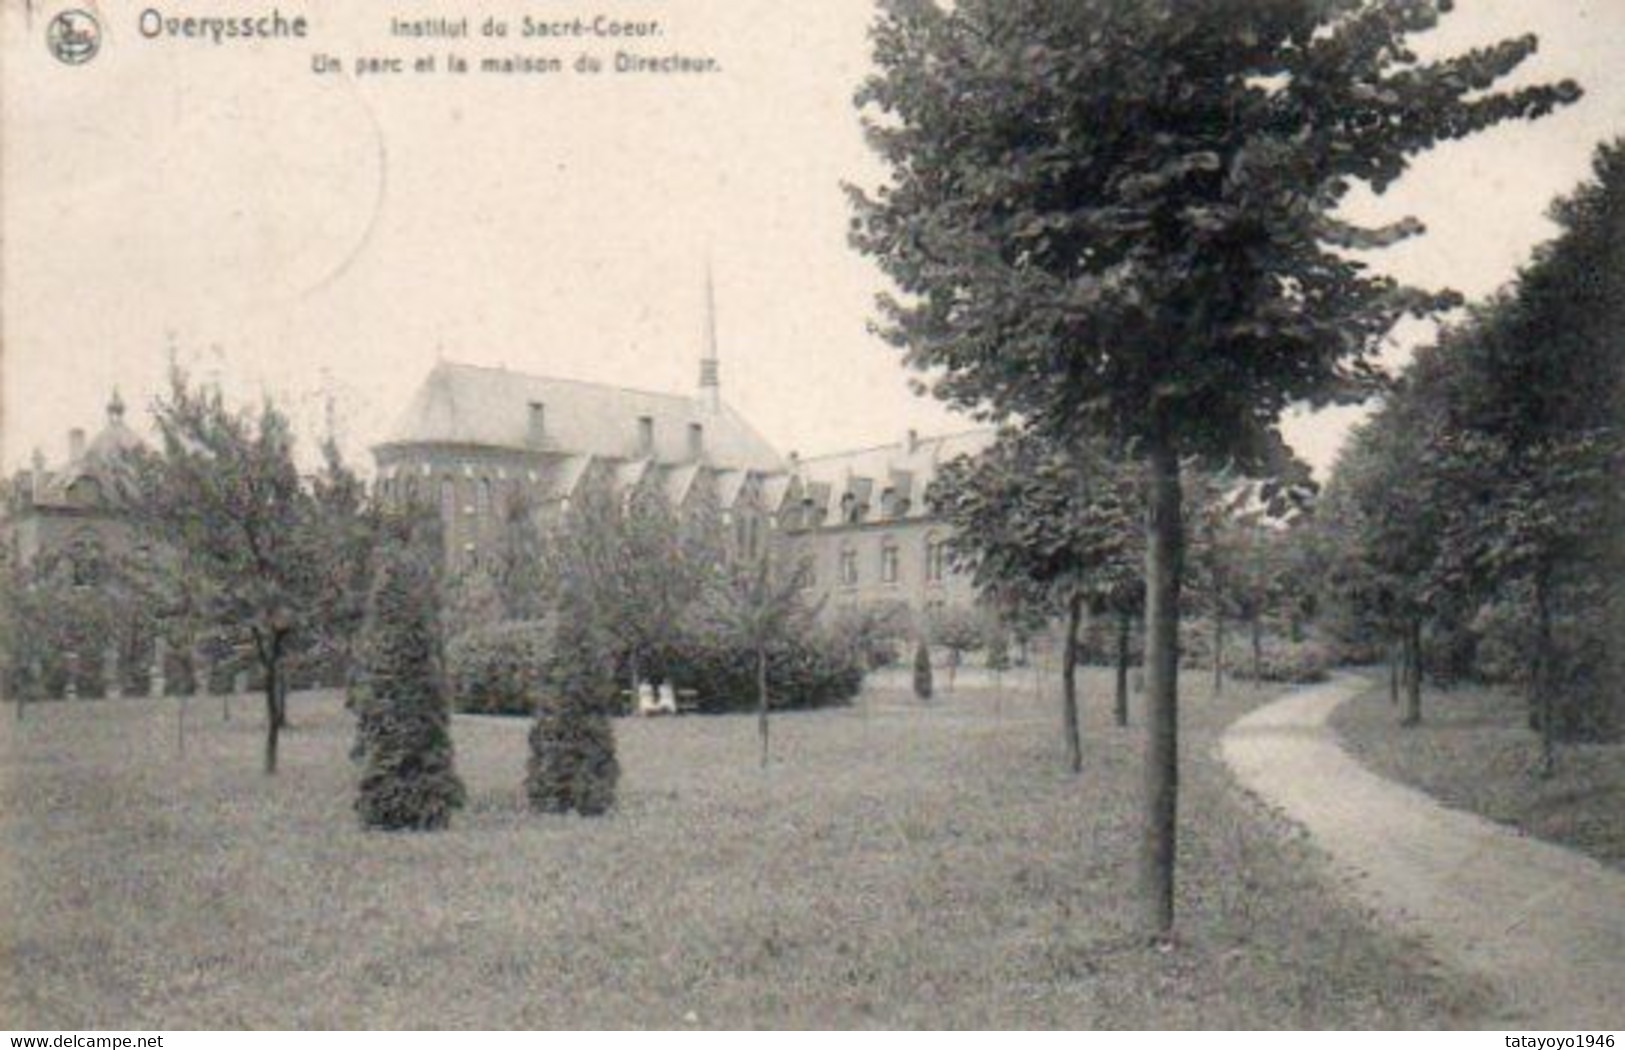 Overyssche  Institut Du Sacré Coeur  Un Parc Et La Maison Du Directeur  Voyagé En 1910 - Overijse